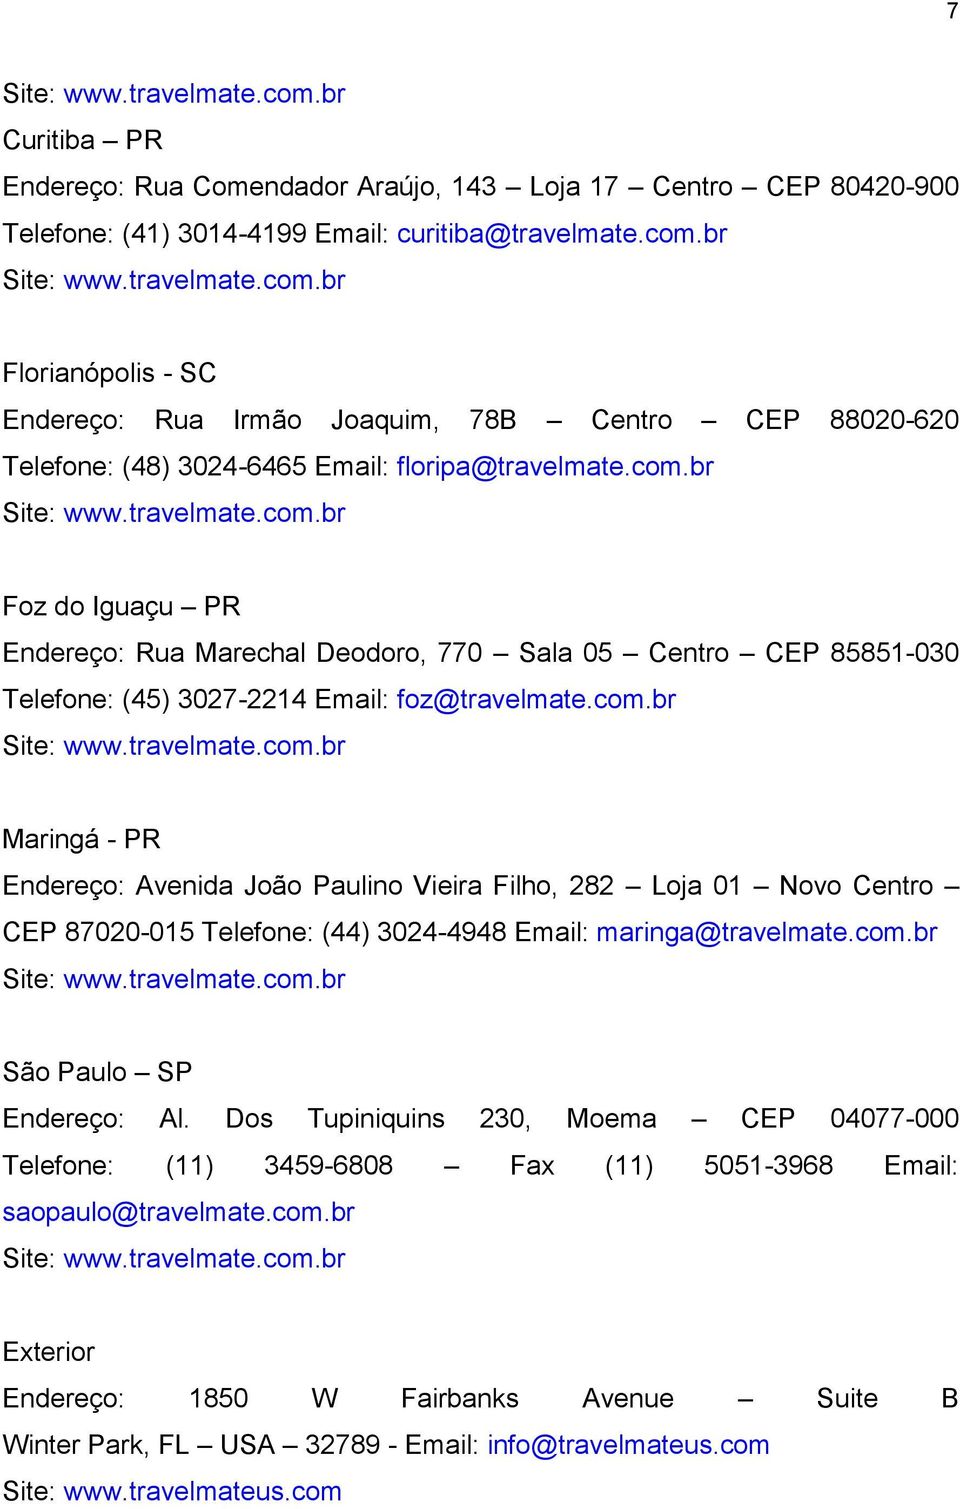 com.br Site: www.travelmate.com.br São Paulo SP Endereço: Al. Dos Tupiniquins 230, Moema CEP 04077-000 Telefone: (11) 3459-6808 Fax (11) 5051-3968 Email: saopaulo@travelmate.com.br Site: www.travelmate.com.br Exterior Endereço: 1850 W Fairbanks Avenue Suite B Winter Park, FL USA 32789 - Email: info@travelmateus.